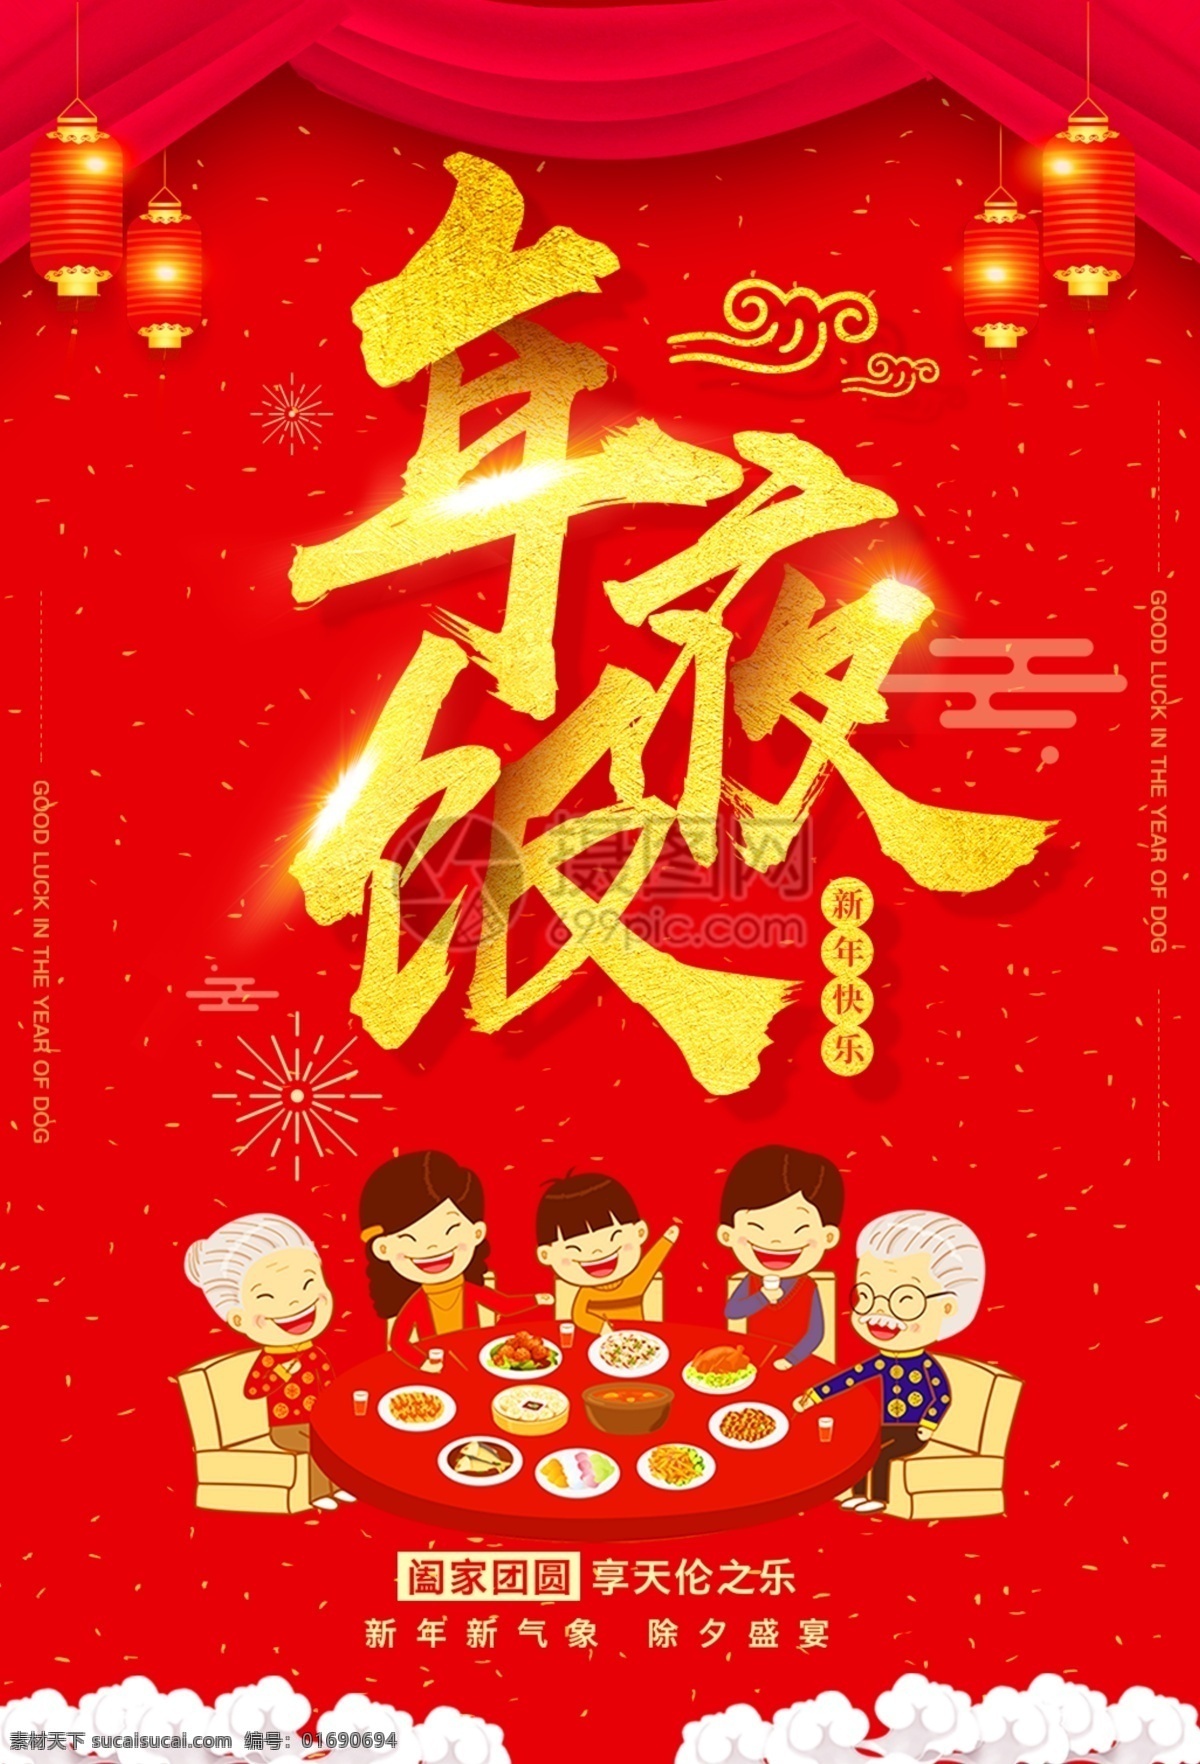 红色 大气 年夜饭 海报 猪年 团圆饭 团圆 2019 新年 过年 新春 春节 一家人 喜气 阖家团圆